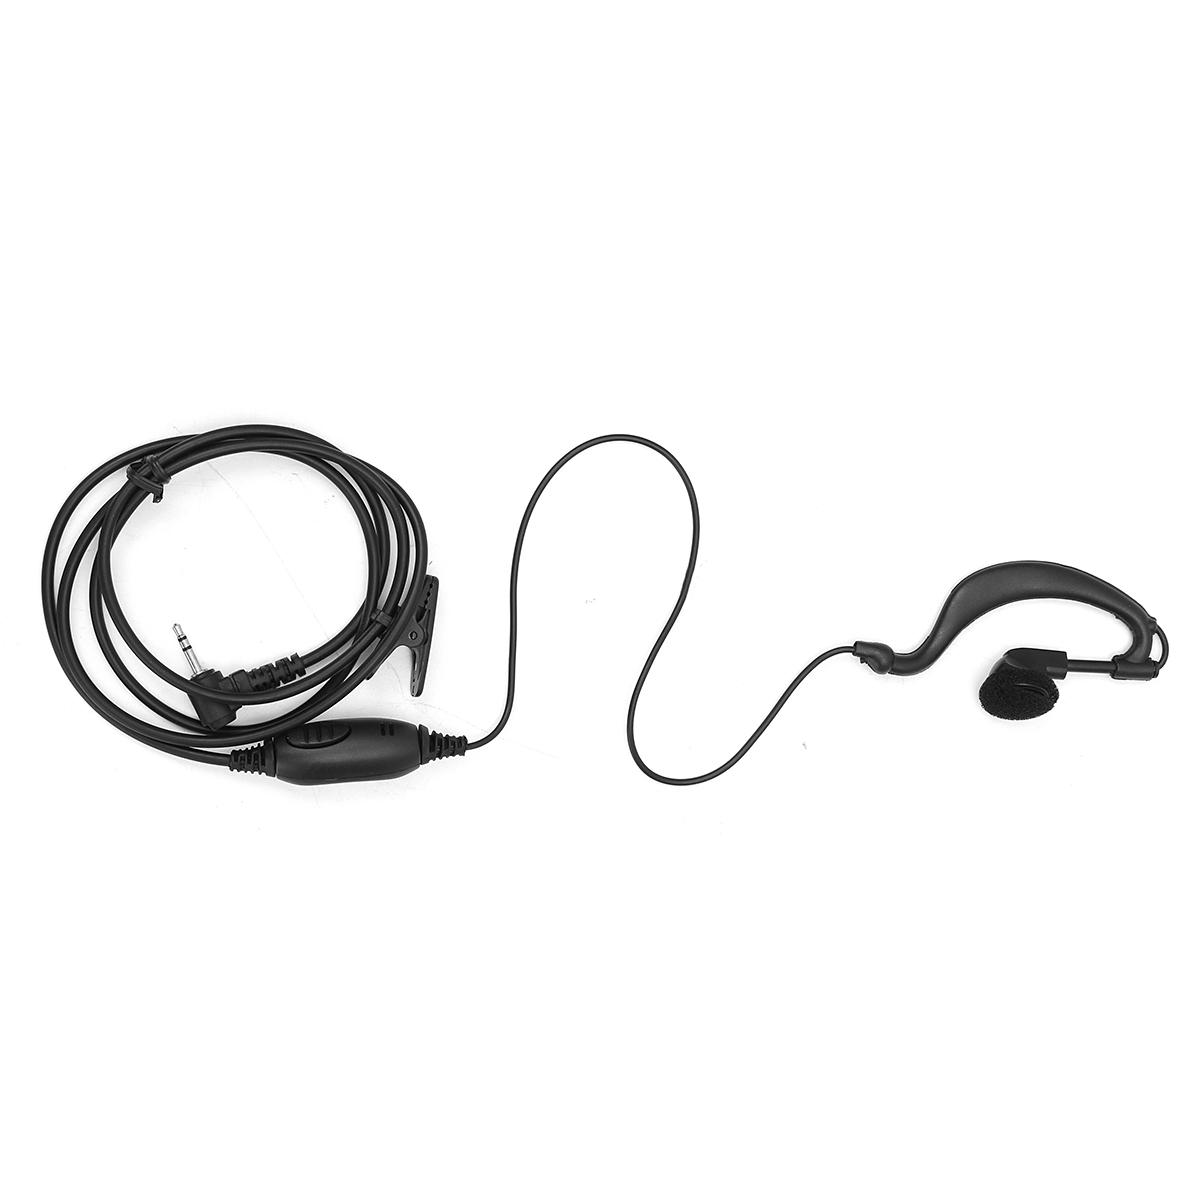 2pcs-G-Shape-Clip-Ear-Headset-Earpiece-for-Motorola-Talkabout-Radio-Walkie-25mm-1114447